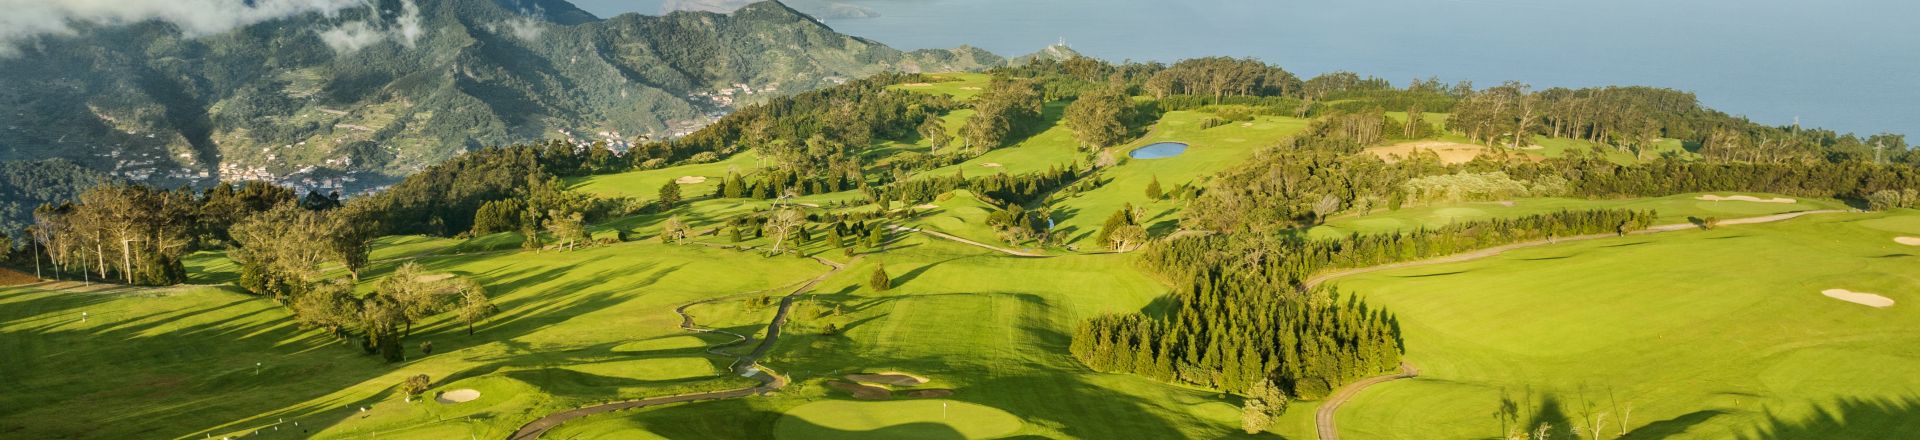 Santo da Serra Golf Course in Madeira